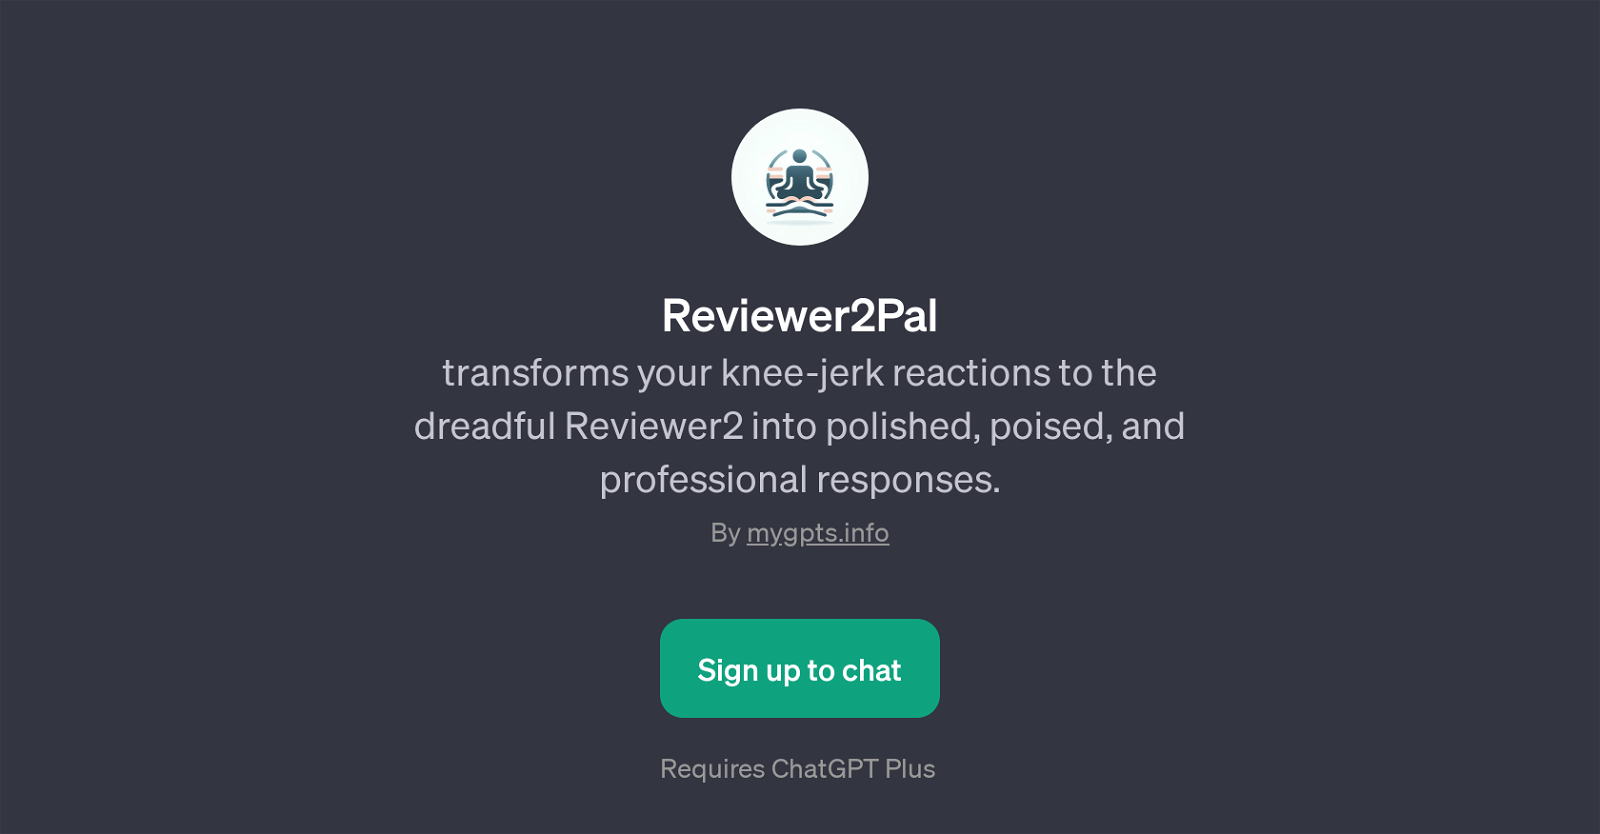 Reviewer2Pal website